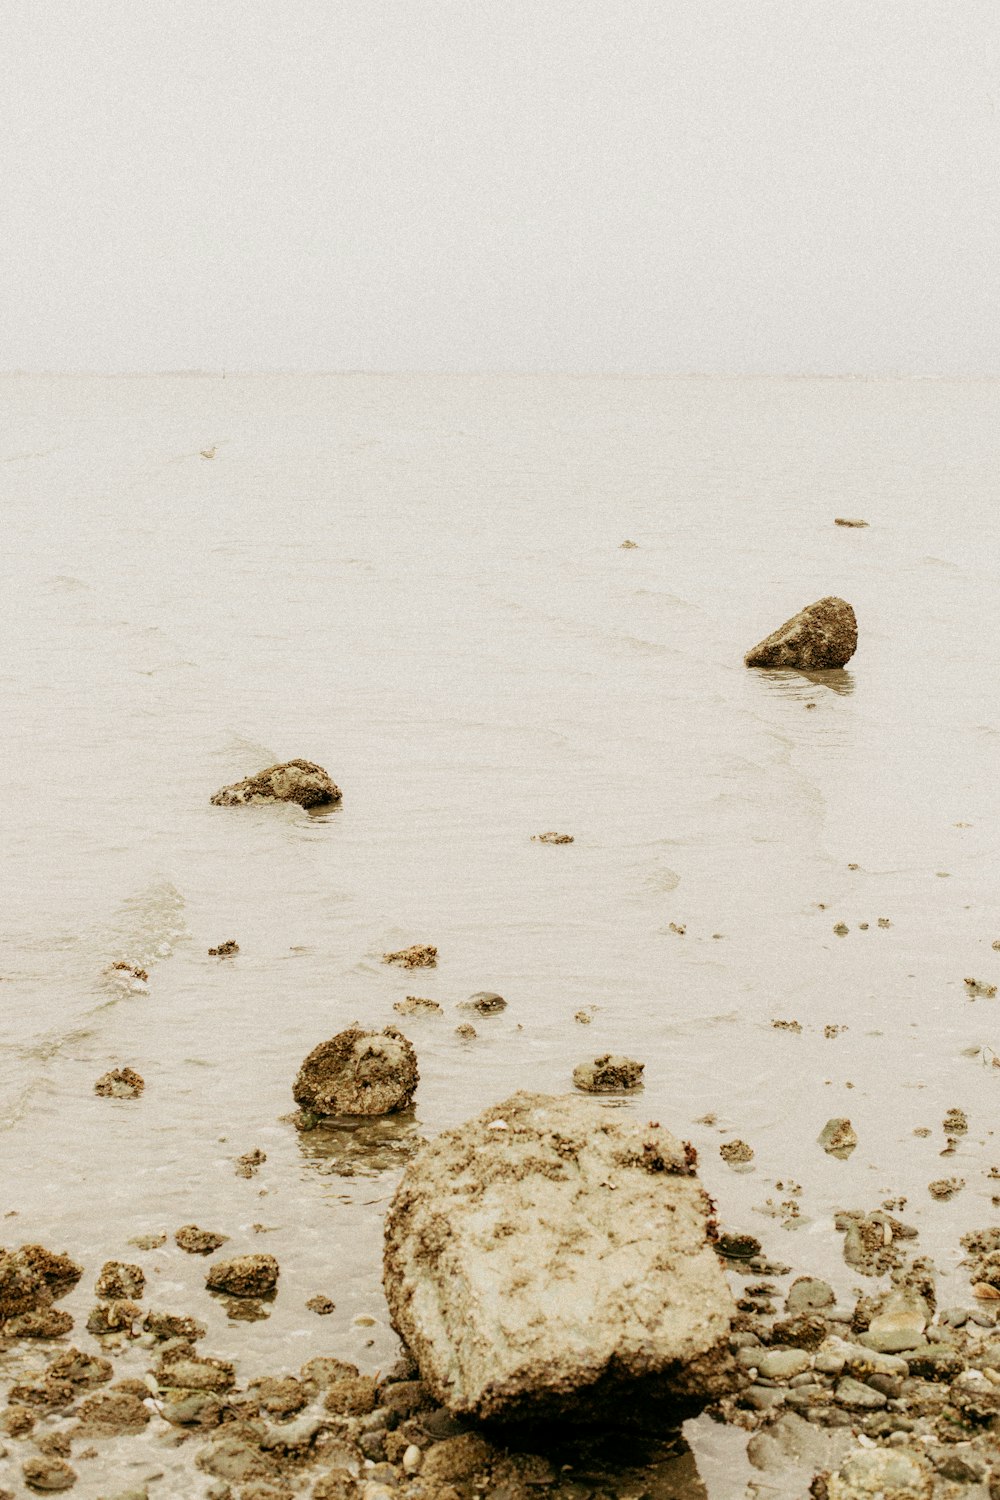 rocas grises sobre arena blanca durante el día